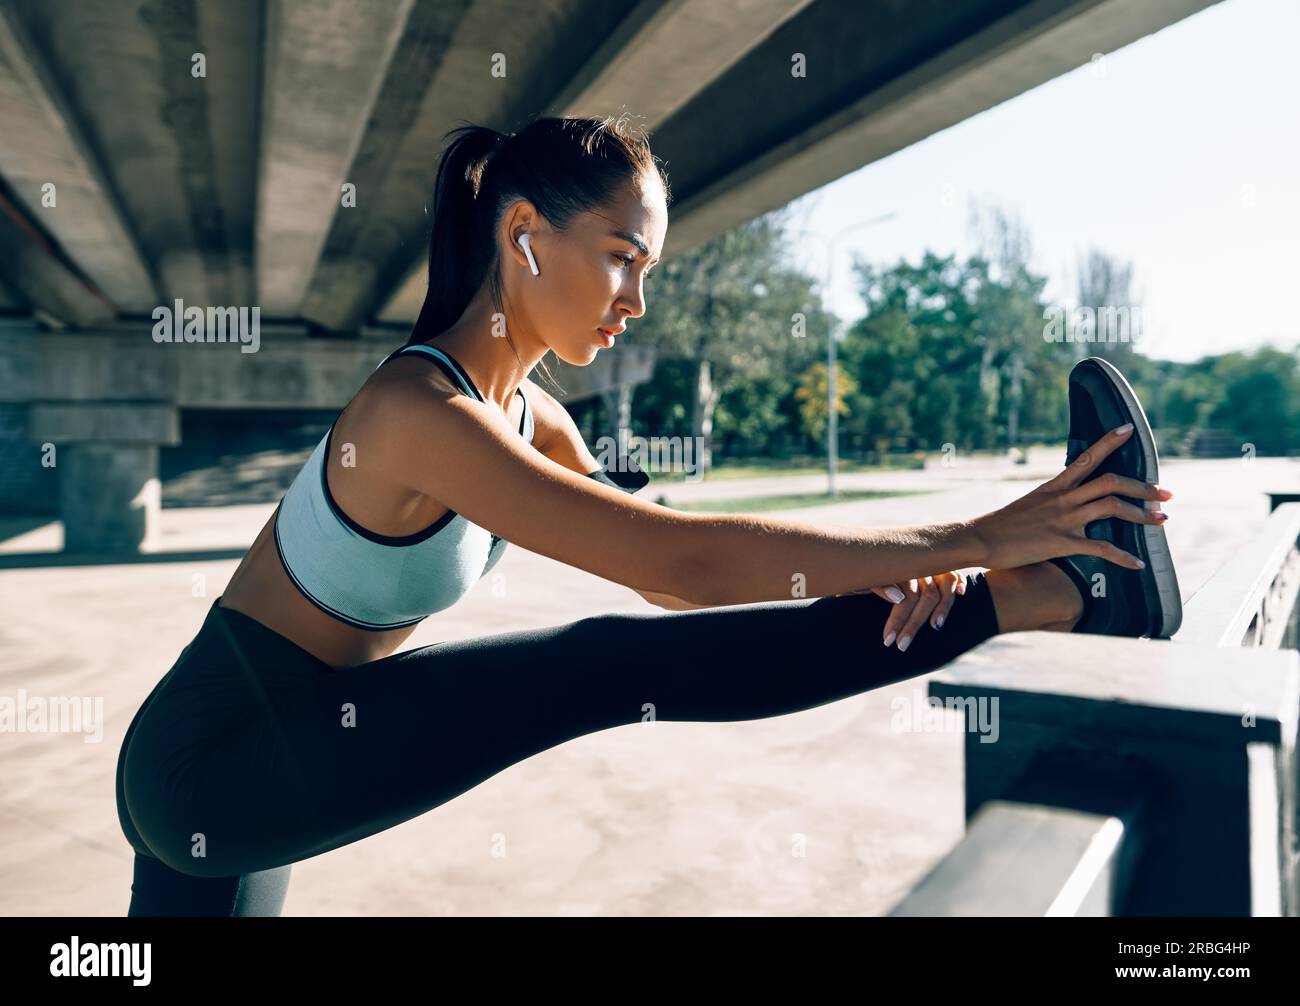 Sportlicher Damenläufer, der die Beine streckt, um sich vor dem Training aufzuwärmen. Urbanes Trainings- und Laufkonzept Stockfoto